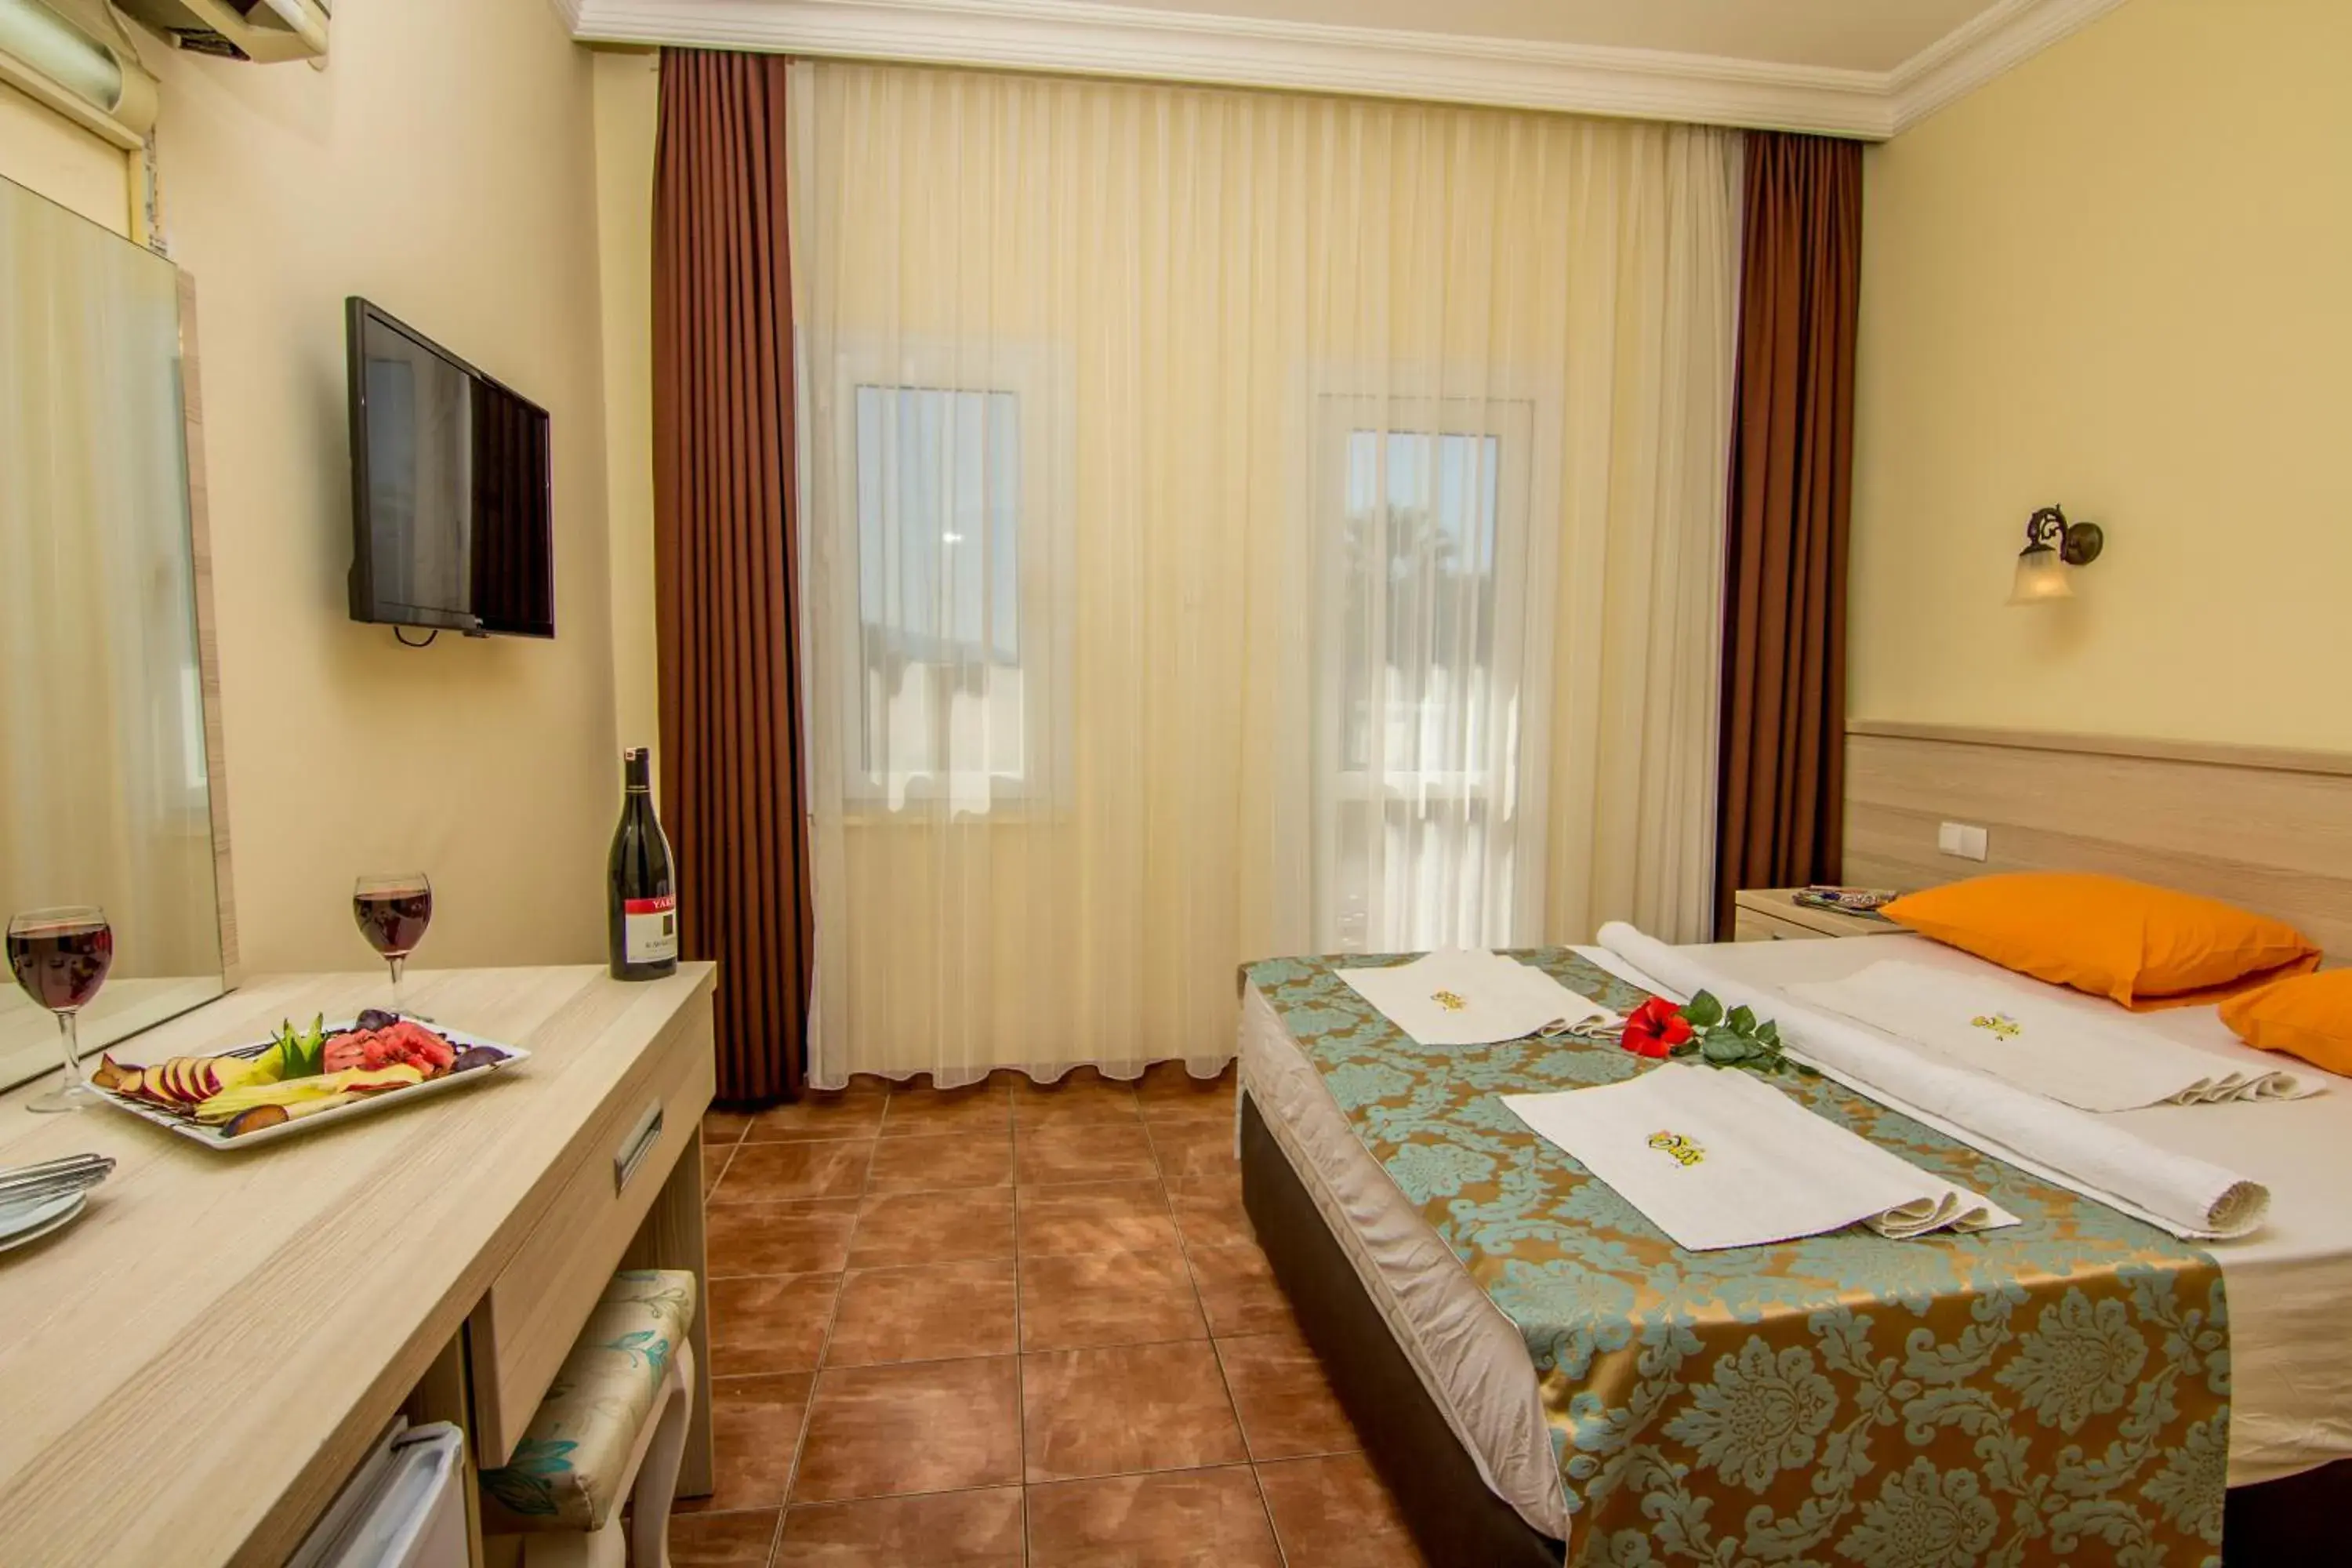 Bed, Room Photo in Magic Tulip Hotel